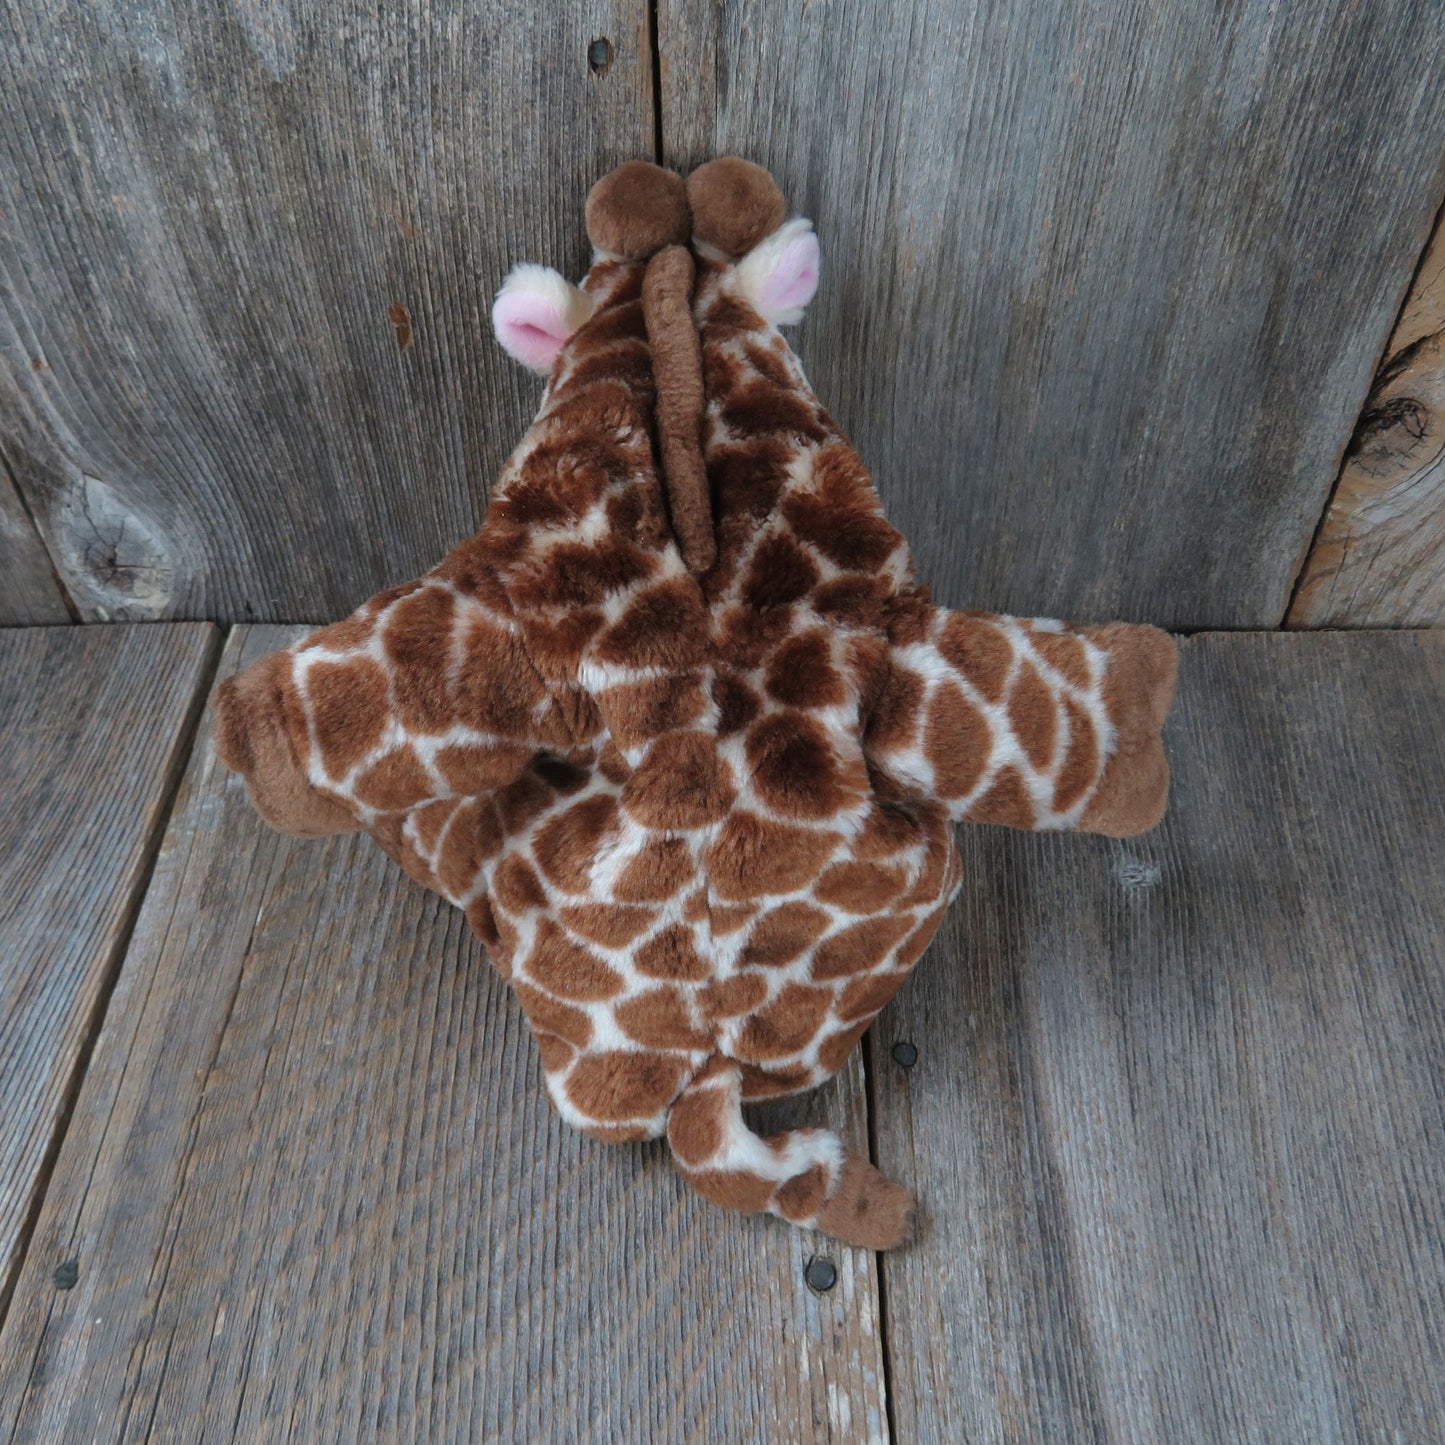 Vintage Gigi E. Giraffe Puppet Stuffed Animal Awana Sunday Vacation Bible School Plush Church Group